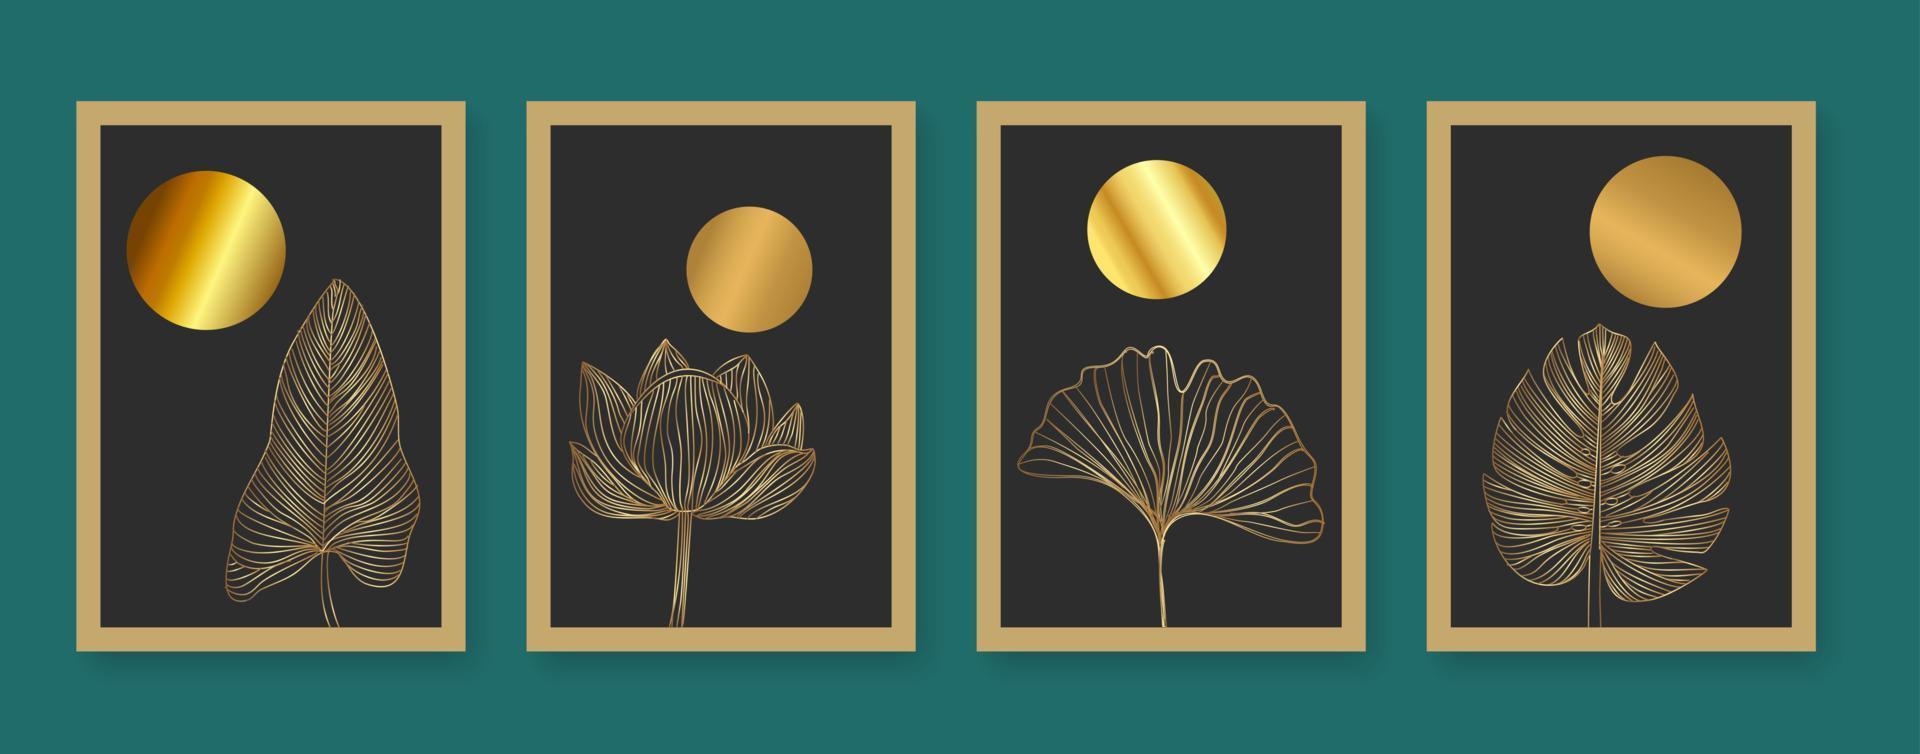 Botanical and golden line wall art vector set.